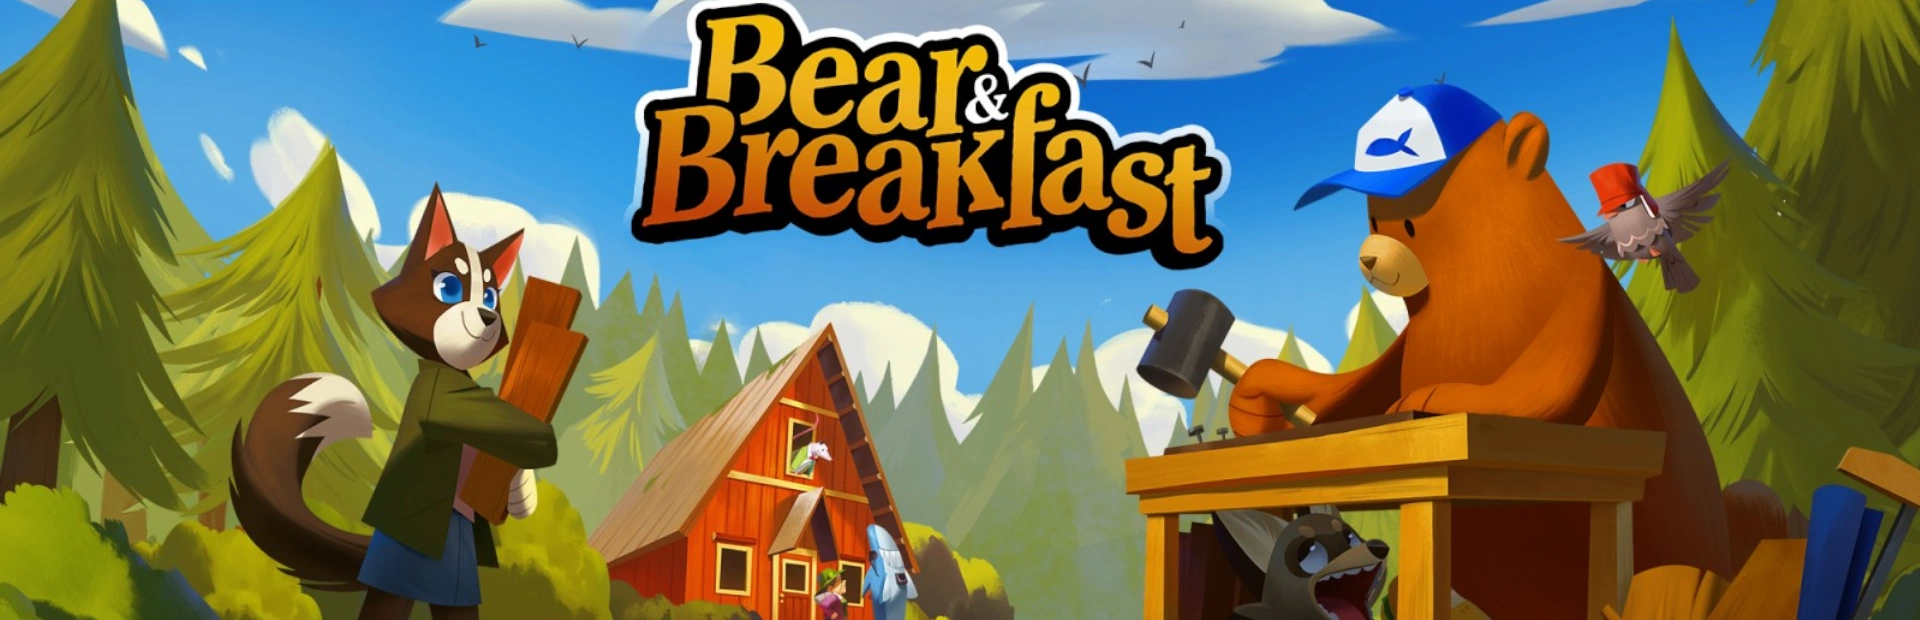 دانلود بازی Bear and Breakfast برای PC | گیمباتو